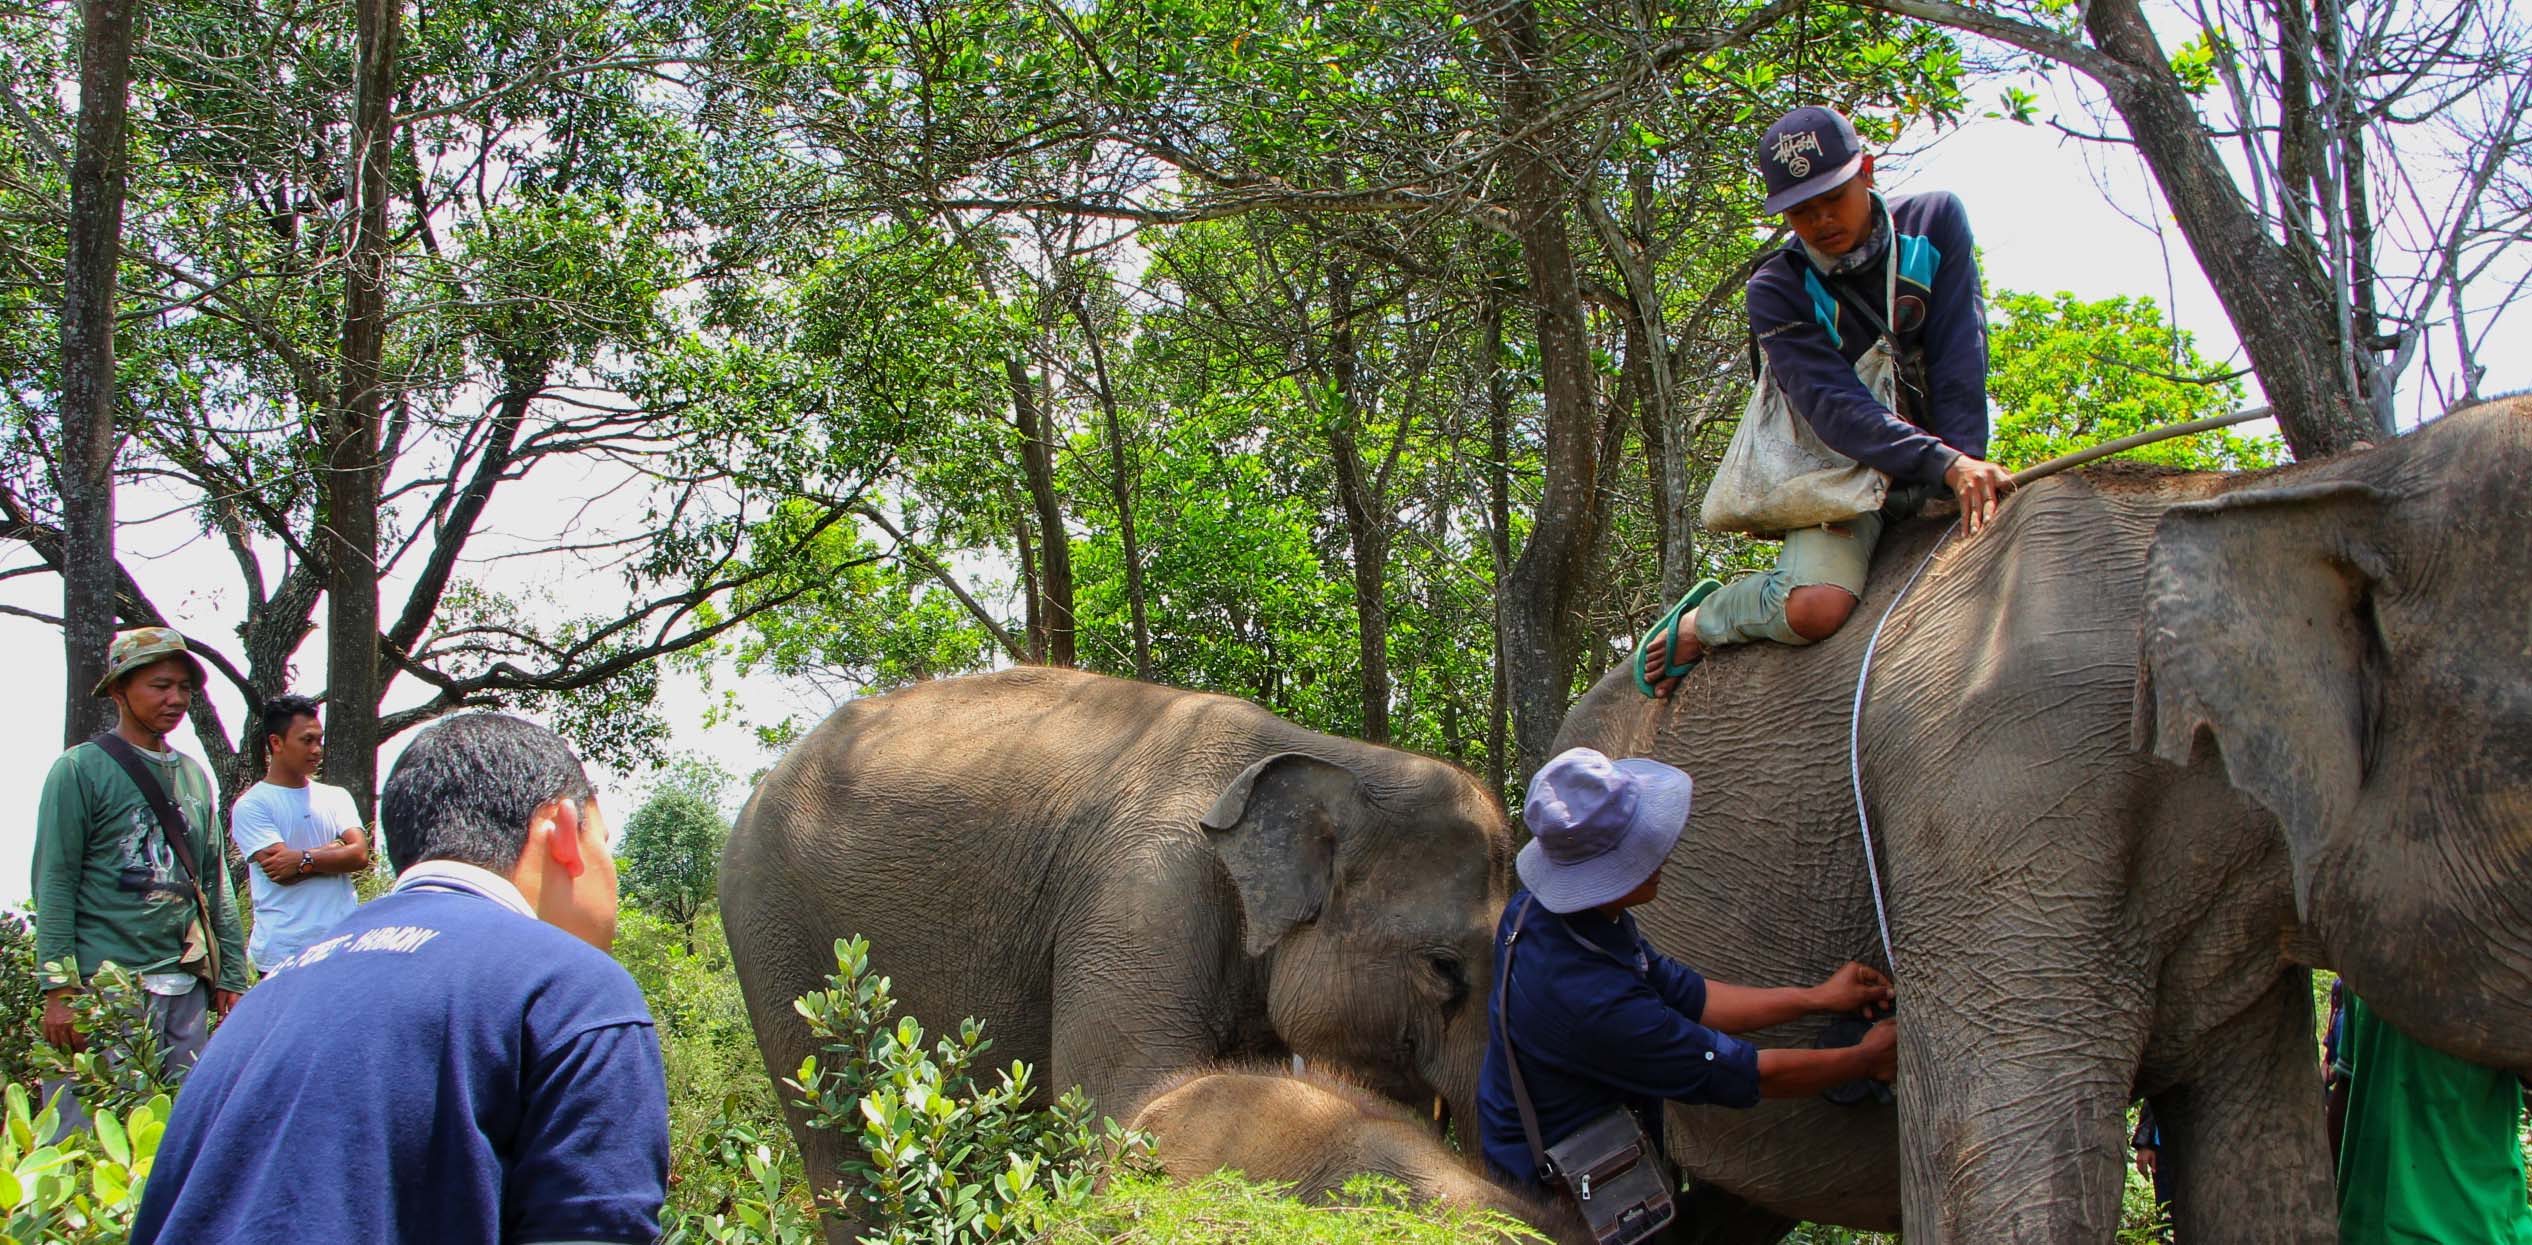 Pemeriksaan kesehatan gajah oleh dokter hewan BNWS. Mahout mengawasi gajah kala pemeriksaan rutin kesehatan mereka | Foto: Ayat S Karokaro/ Mongabay Indonesia